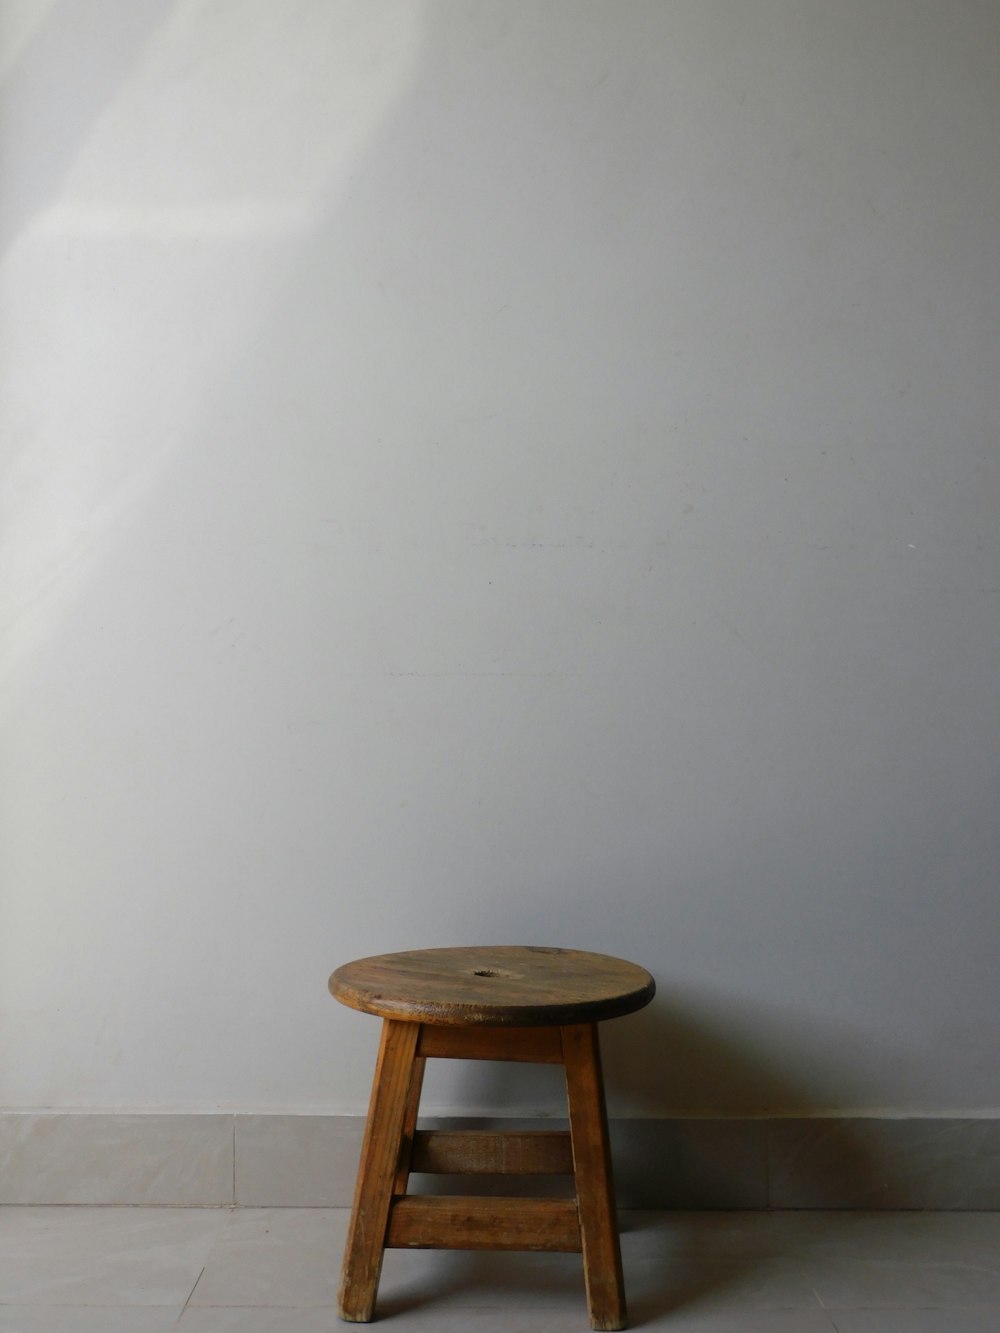 un pequeño taburete de madera contra una pared blanca